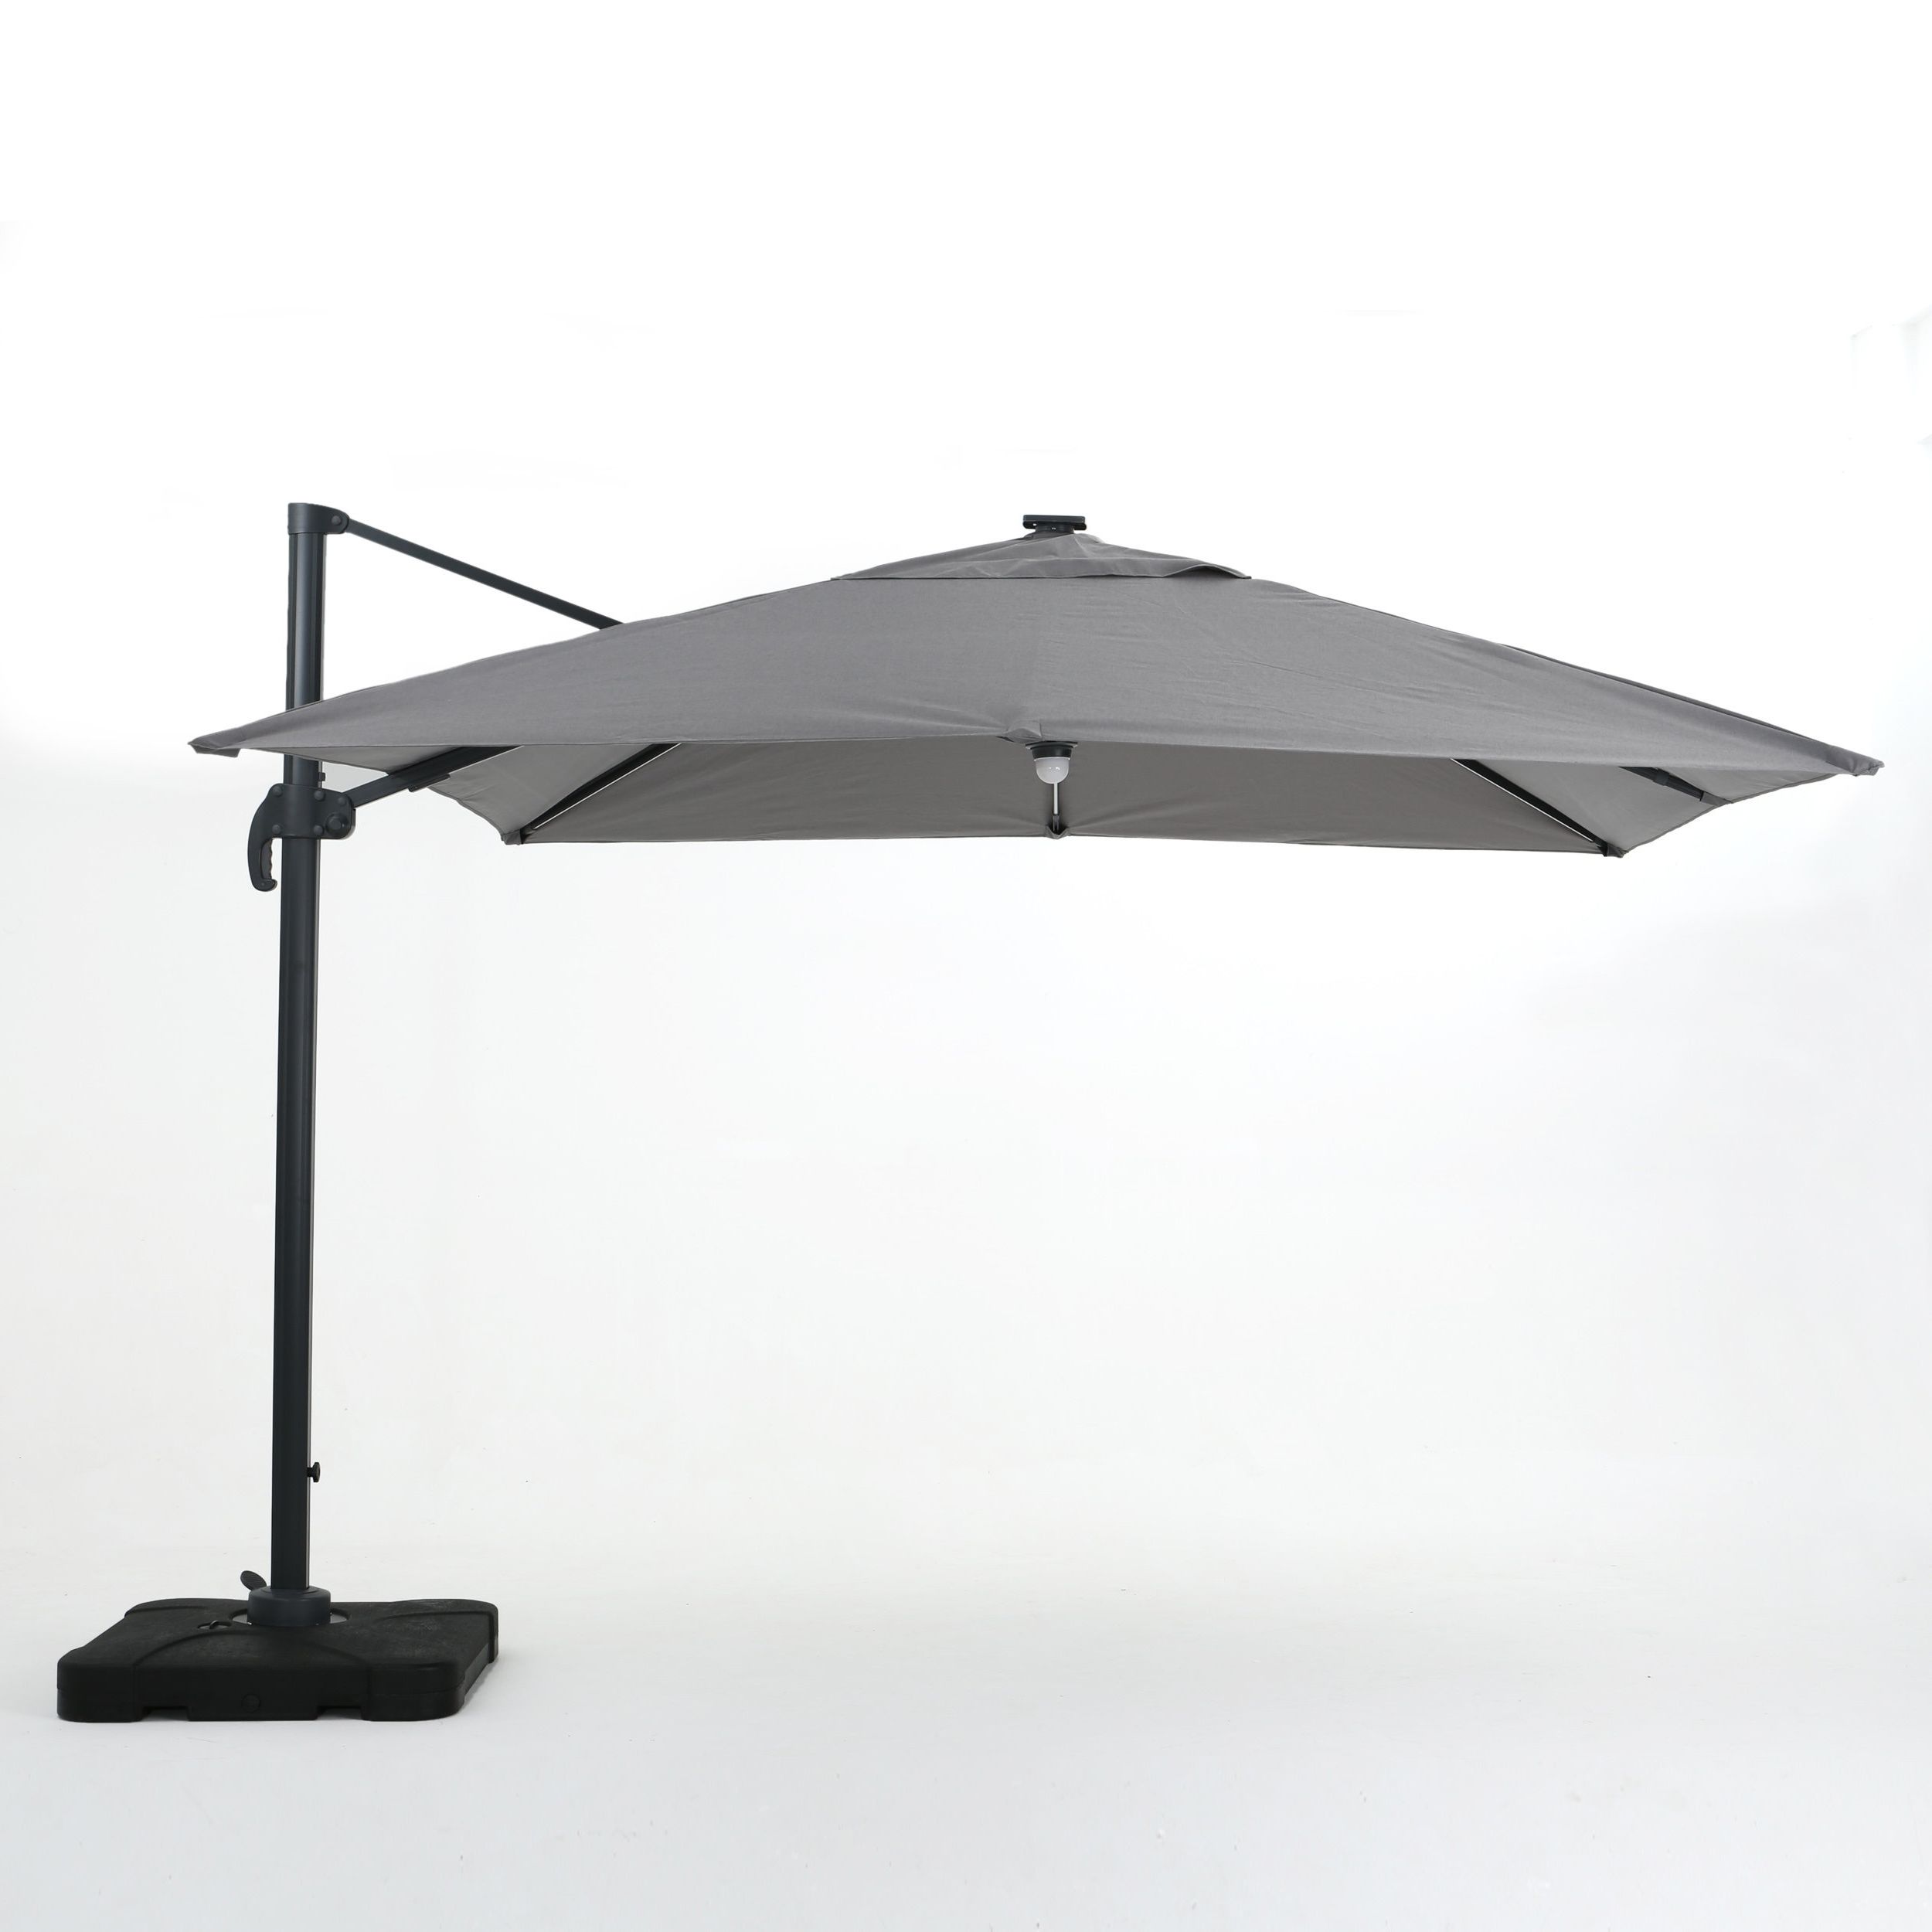 Cora Square Cantilever Umbrellas Pertaining To Favorite Jendayi Square Cantilever Umbrella (View 6 of 20)